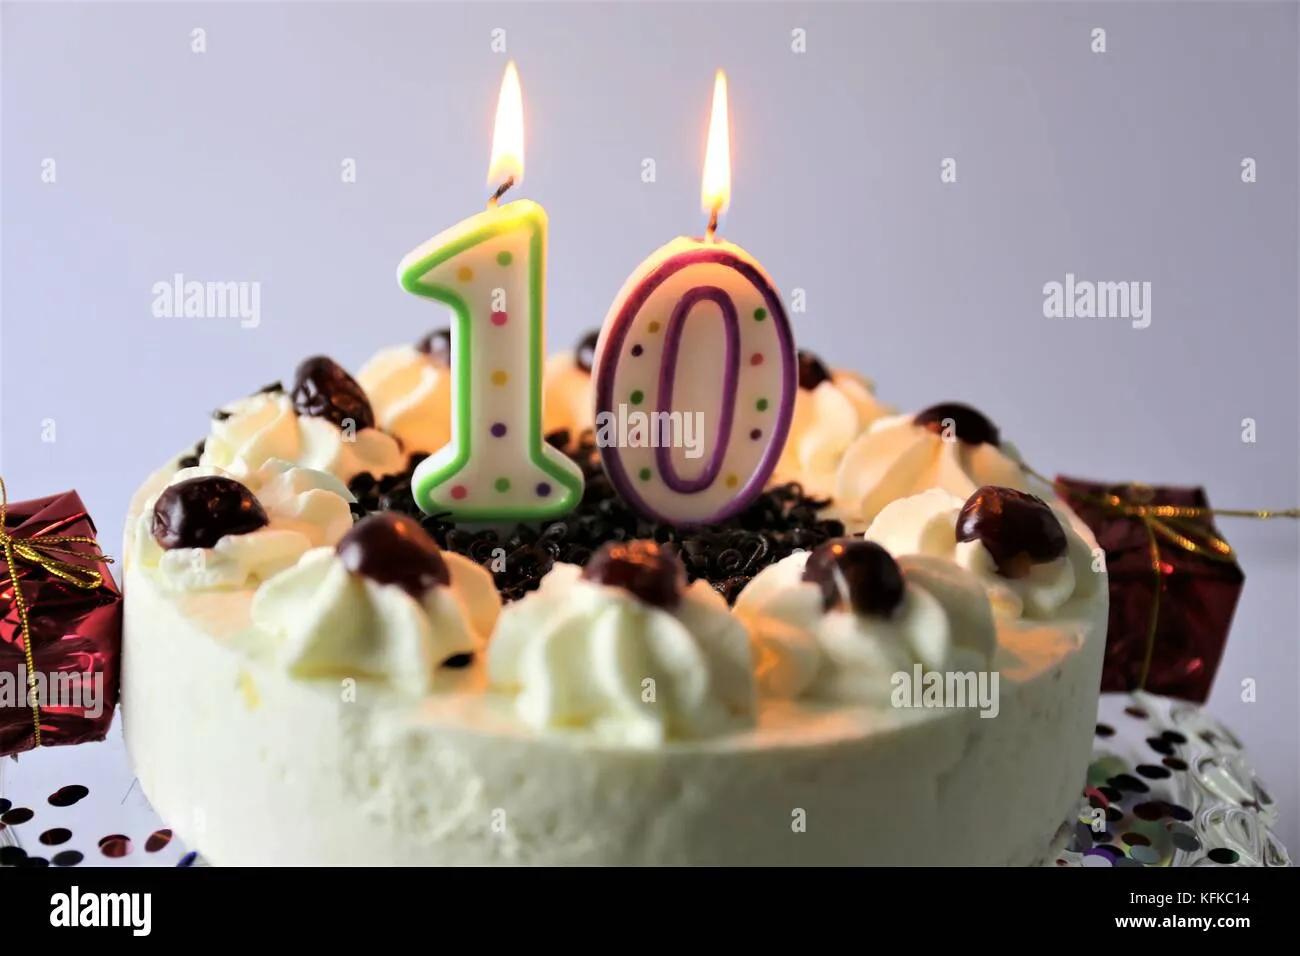 Ein Bild von einer Geburtstagstorte mit Kerzen - 10 Stockfotografie - Alamy